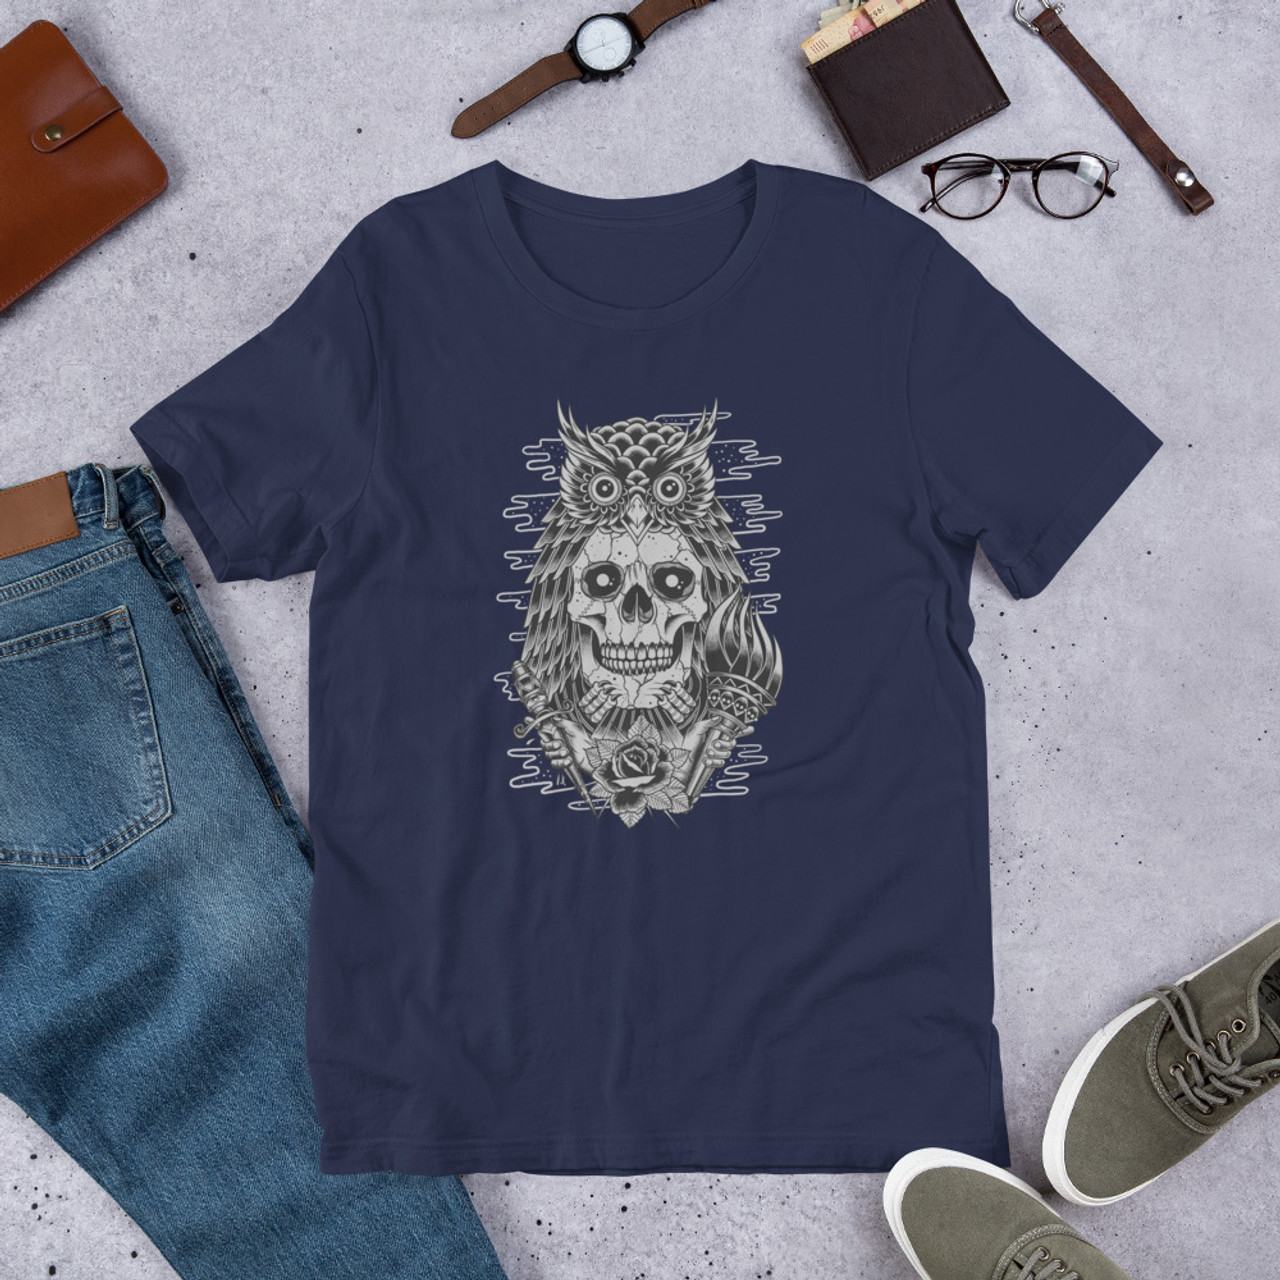 Navy T-Shirt - Bella + Canvas 3001 Owl Skull